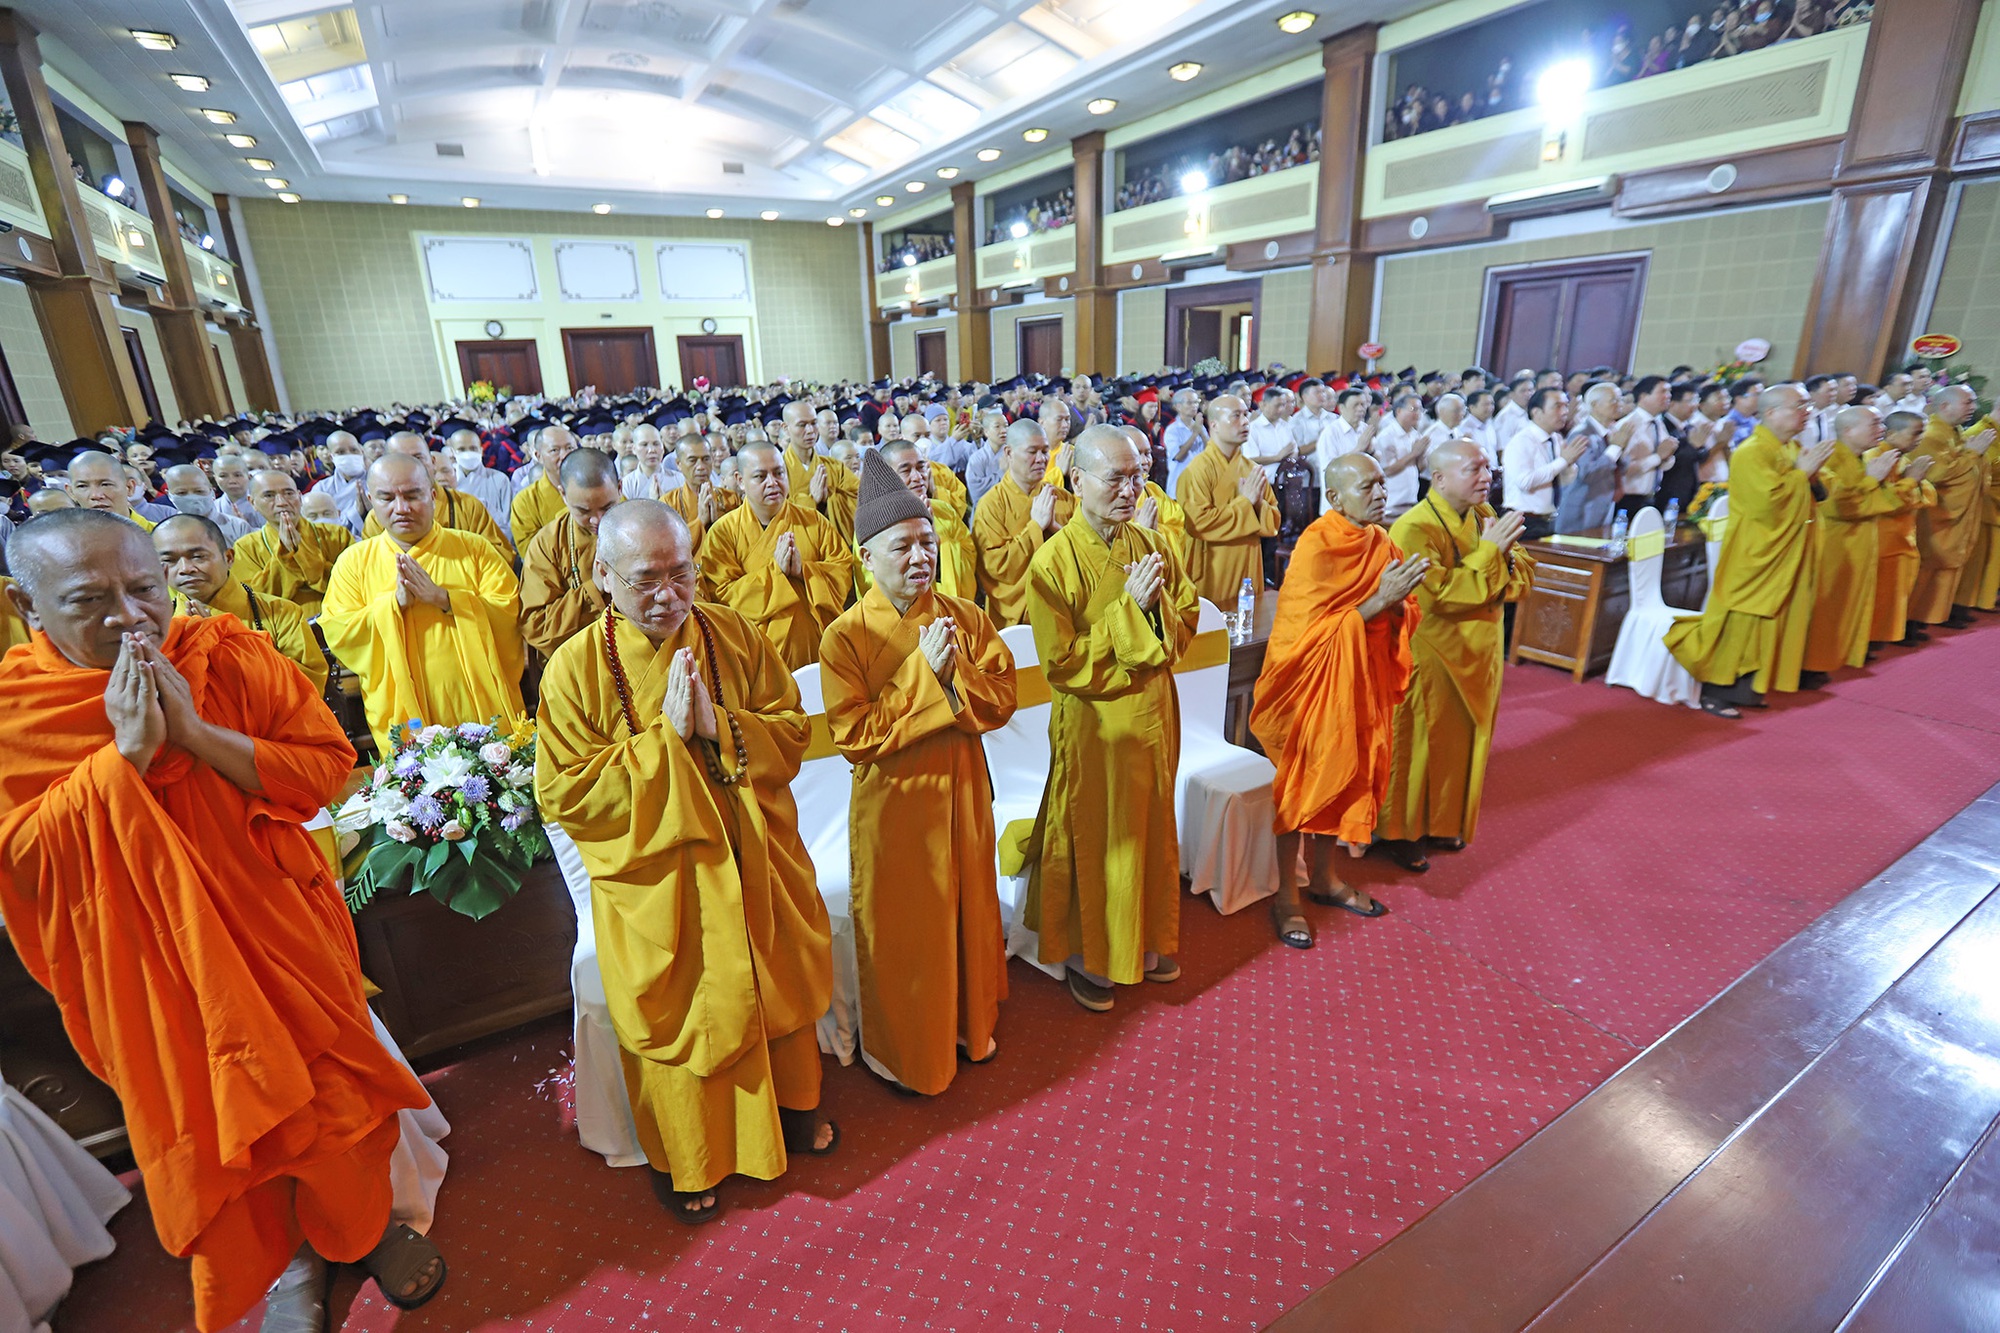 Lễ khai giảng đặc biệt tại ngôi trường có nhiều nhà sư theo học nhất Việt Nam - Ảnh 1.